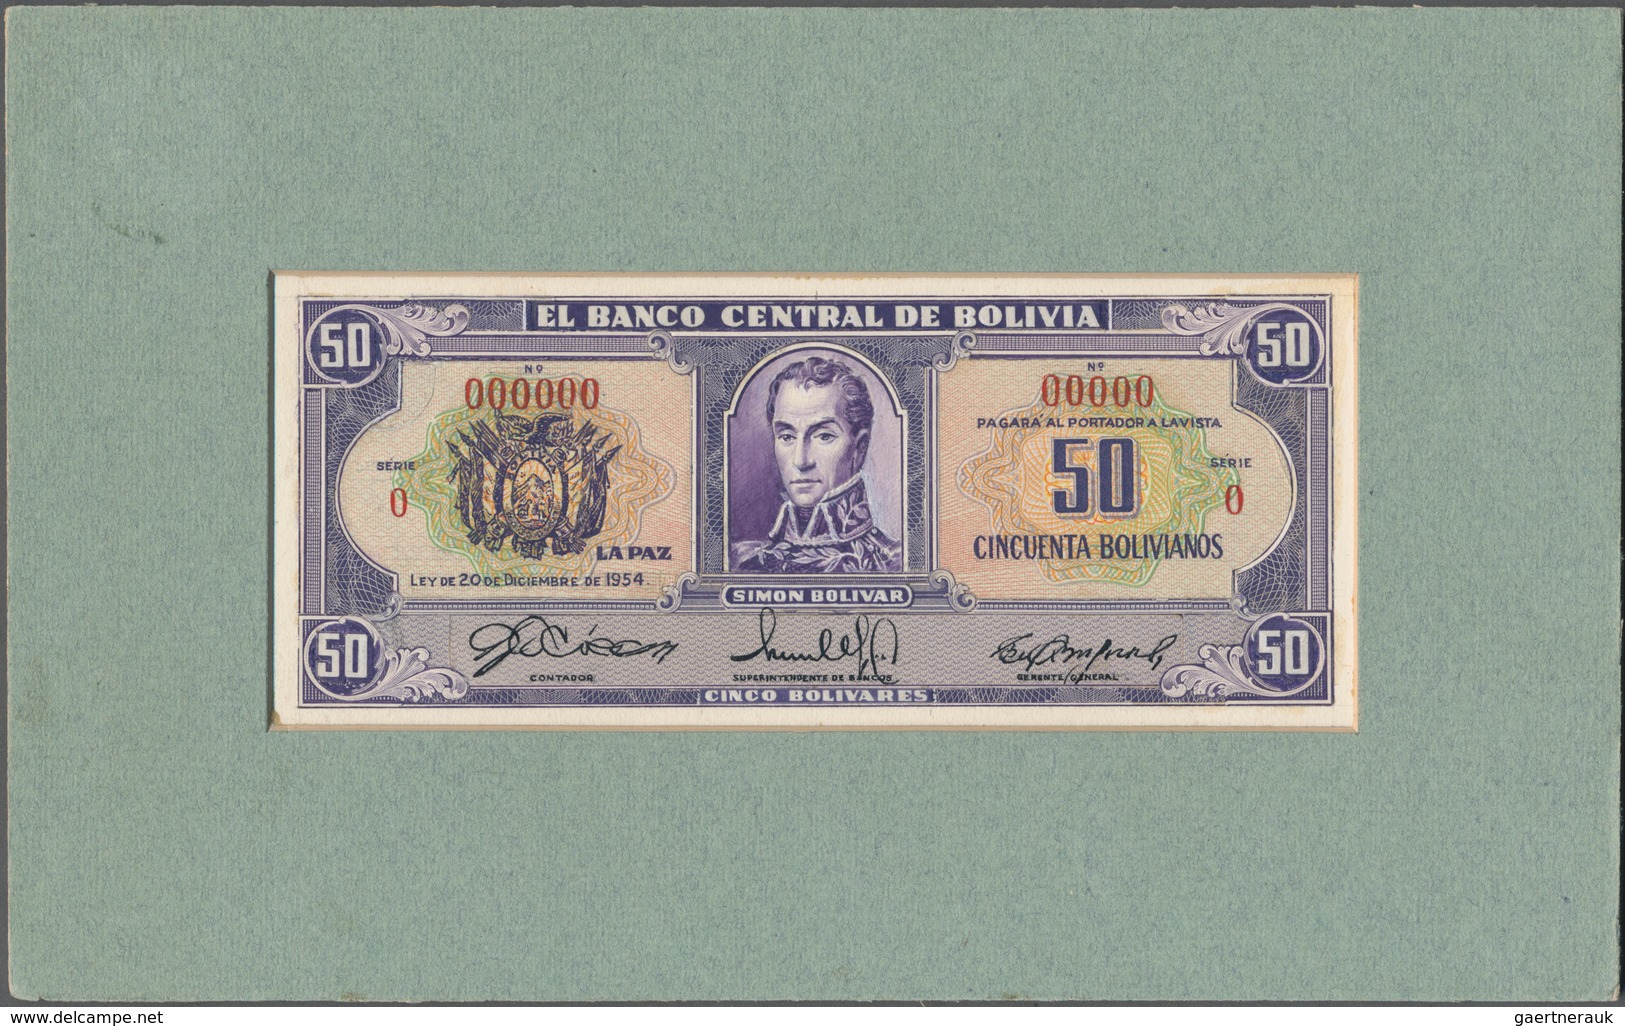 Bolivia / Bolivien: El Banco Central De Bolivia Design Proof Of 50 Bolivares For An Unissued Series - Bolivien